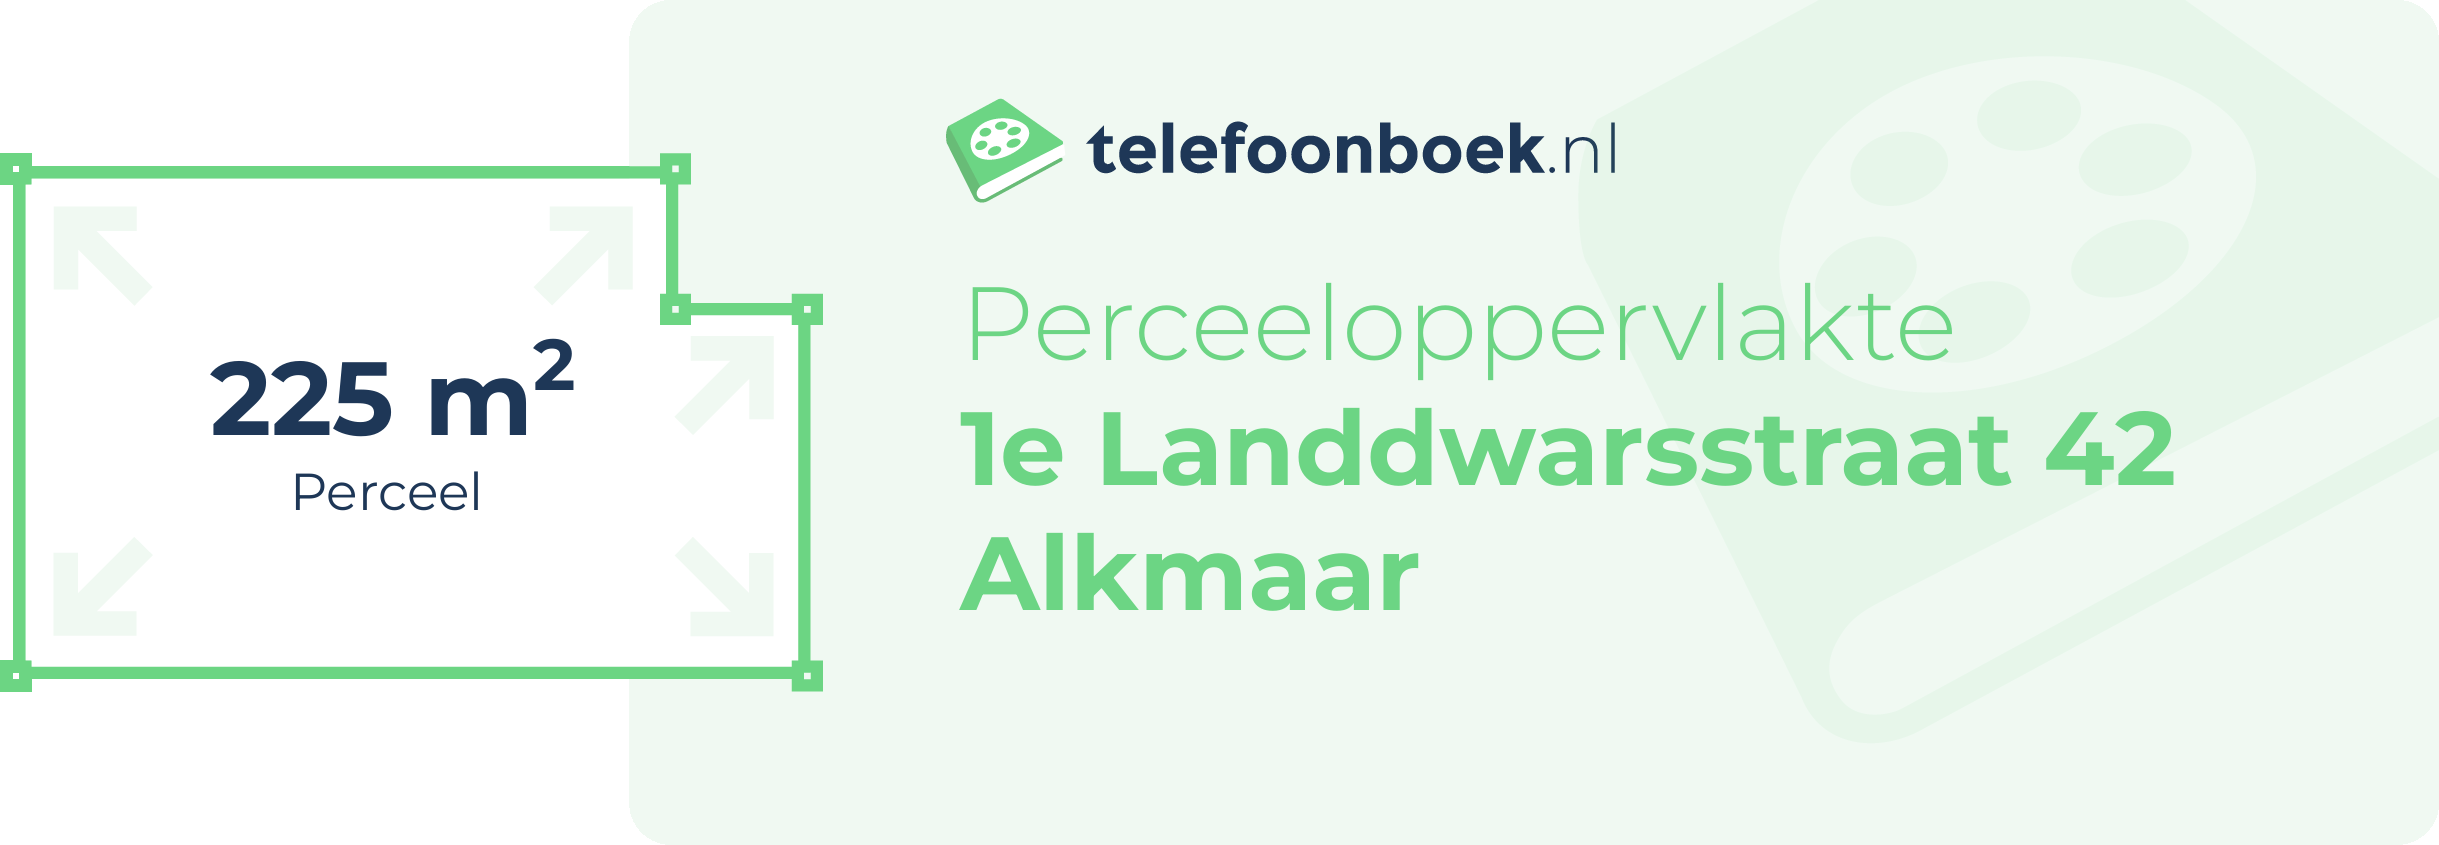 Perceeloppervlakte 1e Landdwarsstraat 42 Alkmaar